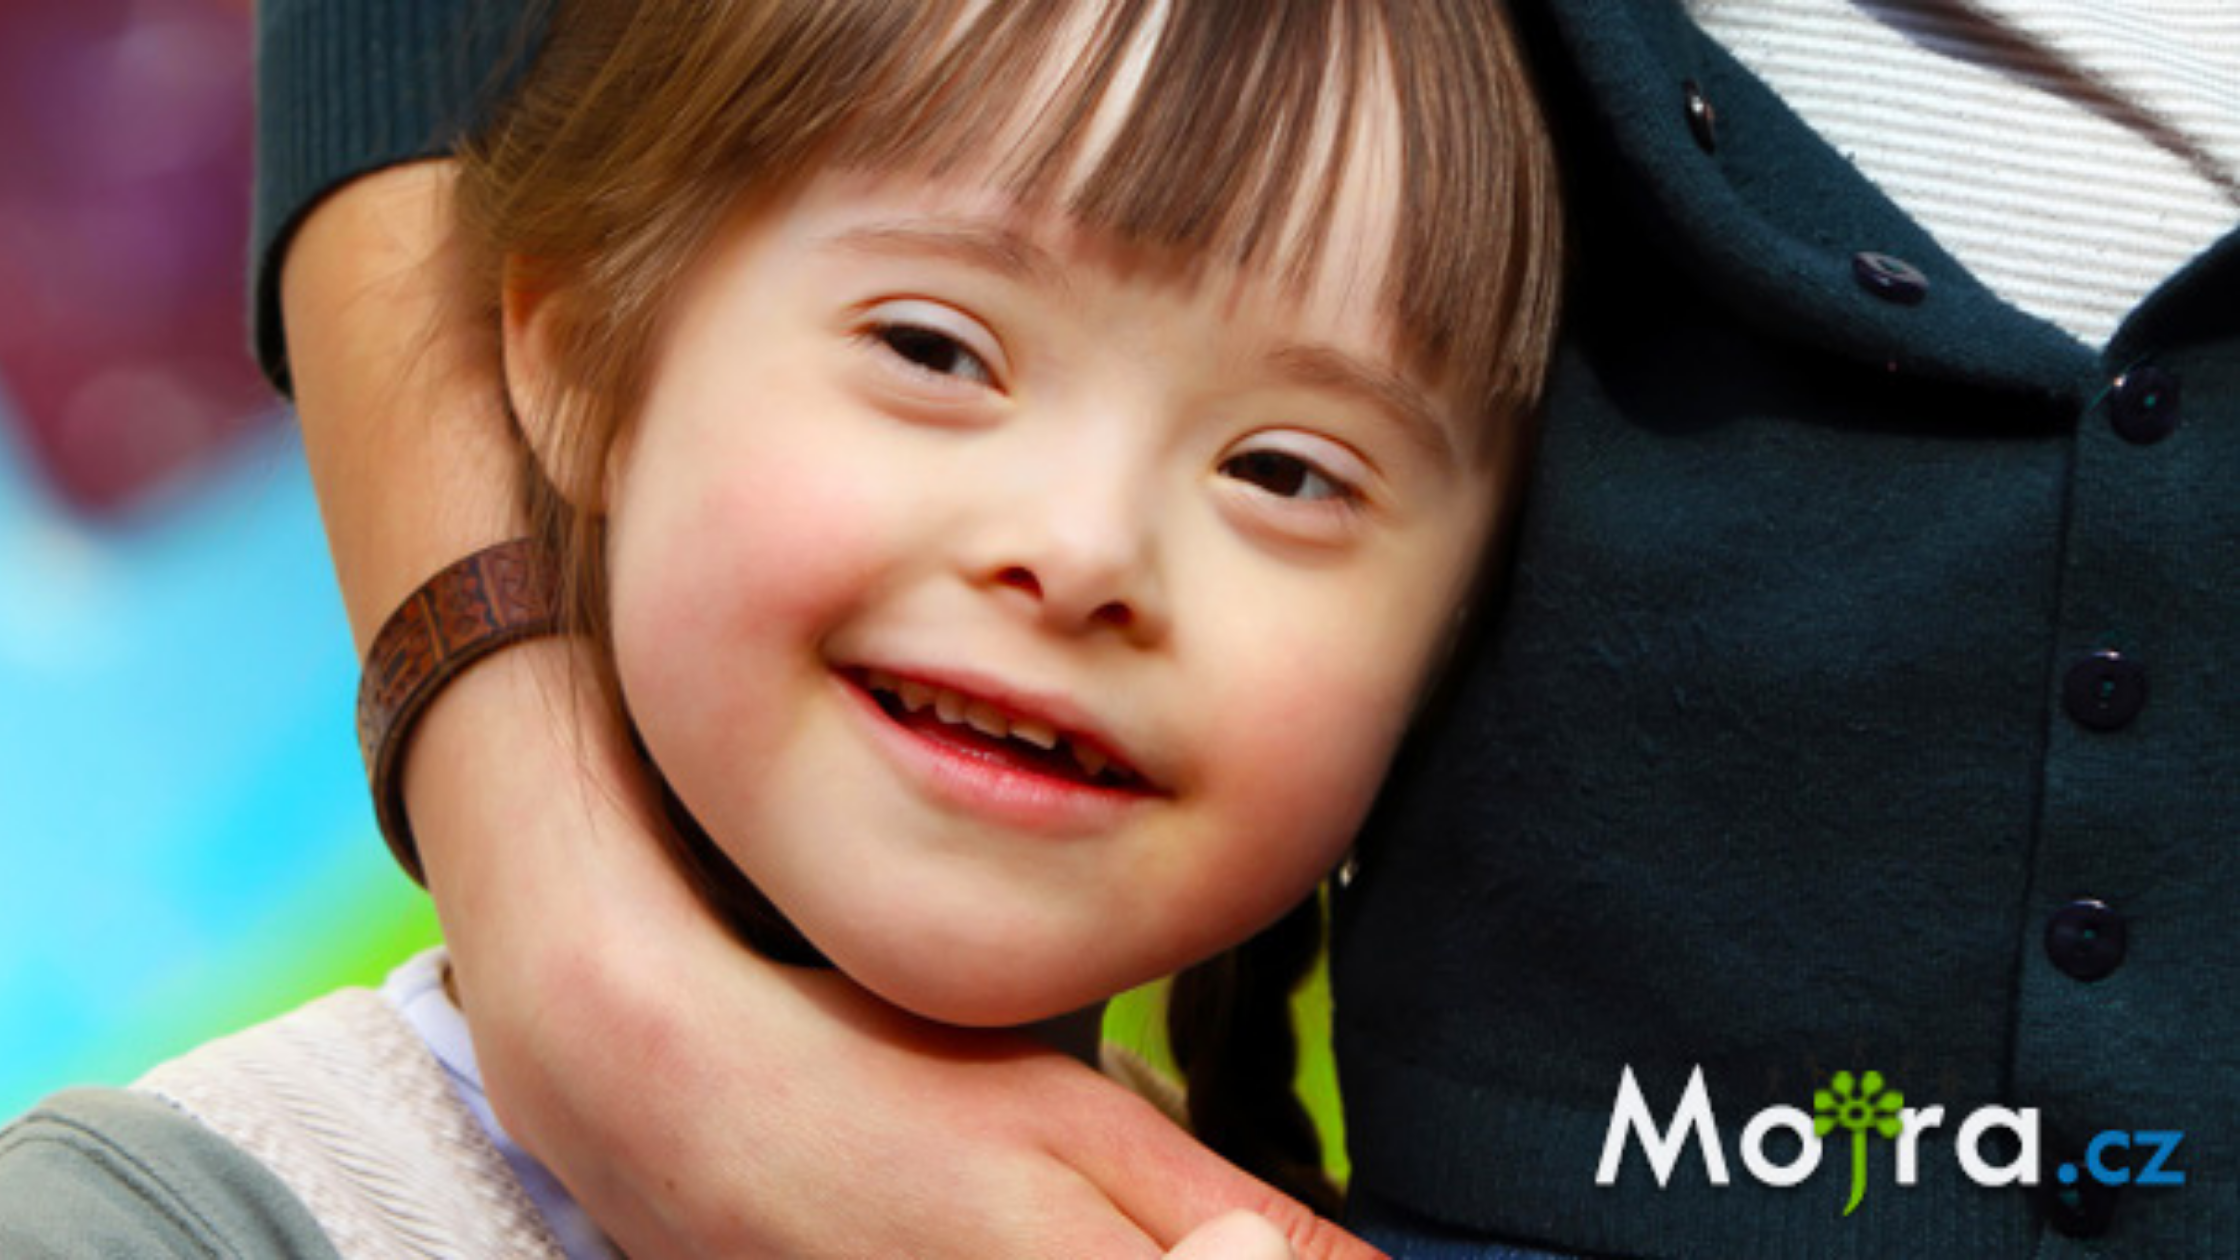 DOWNŮV SYNDROM: Jak vychovávat dítě s Downovým syndromem